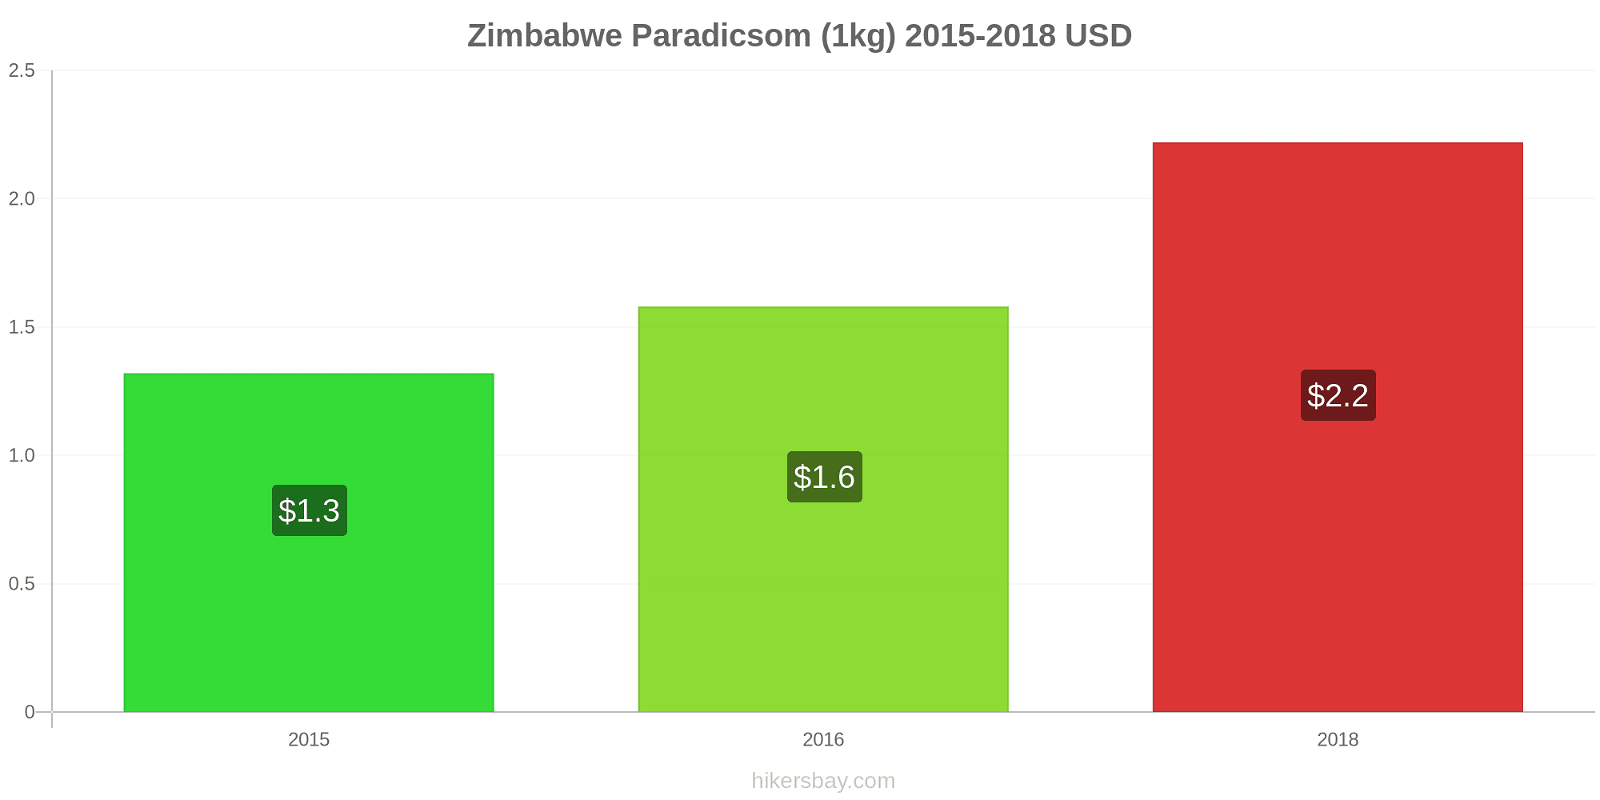 Zimbabwe árváltozások Paradicsom (1kg) hikersbay.com